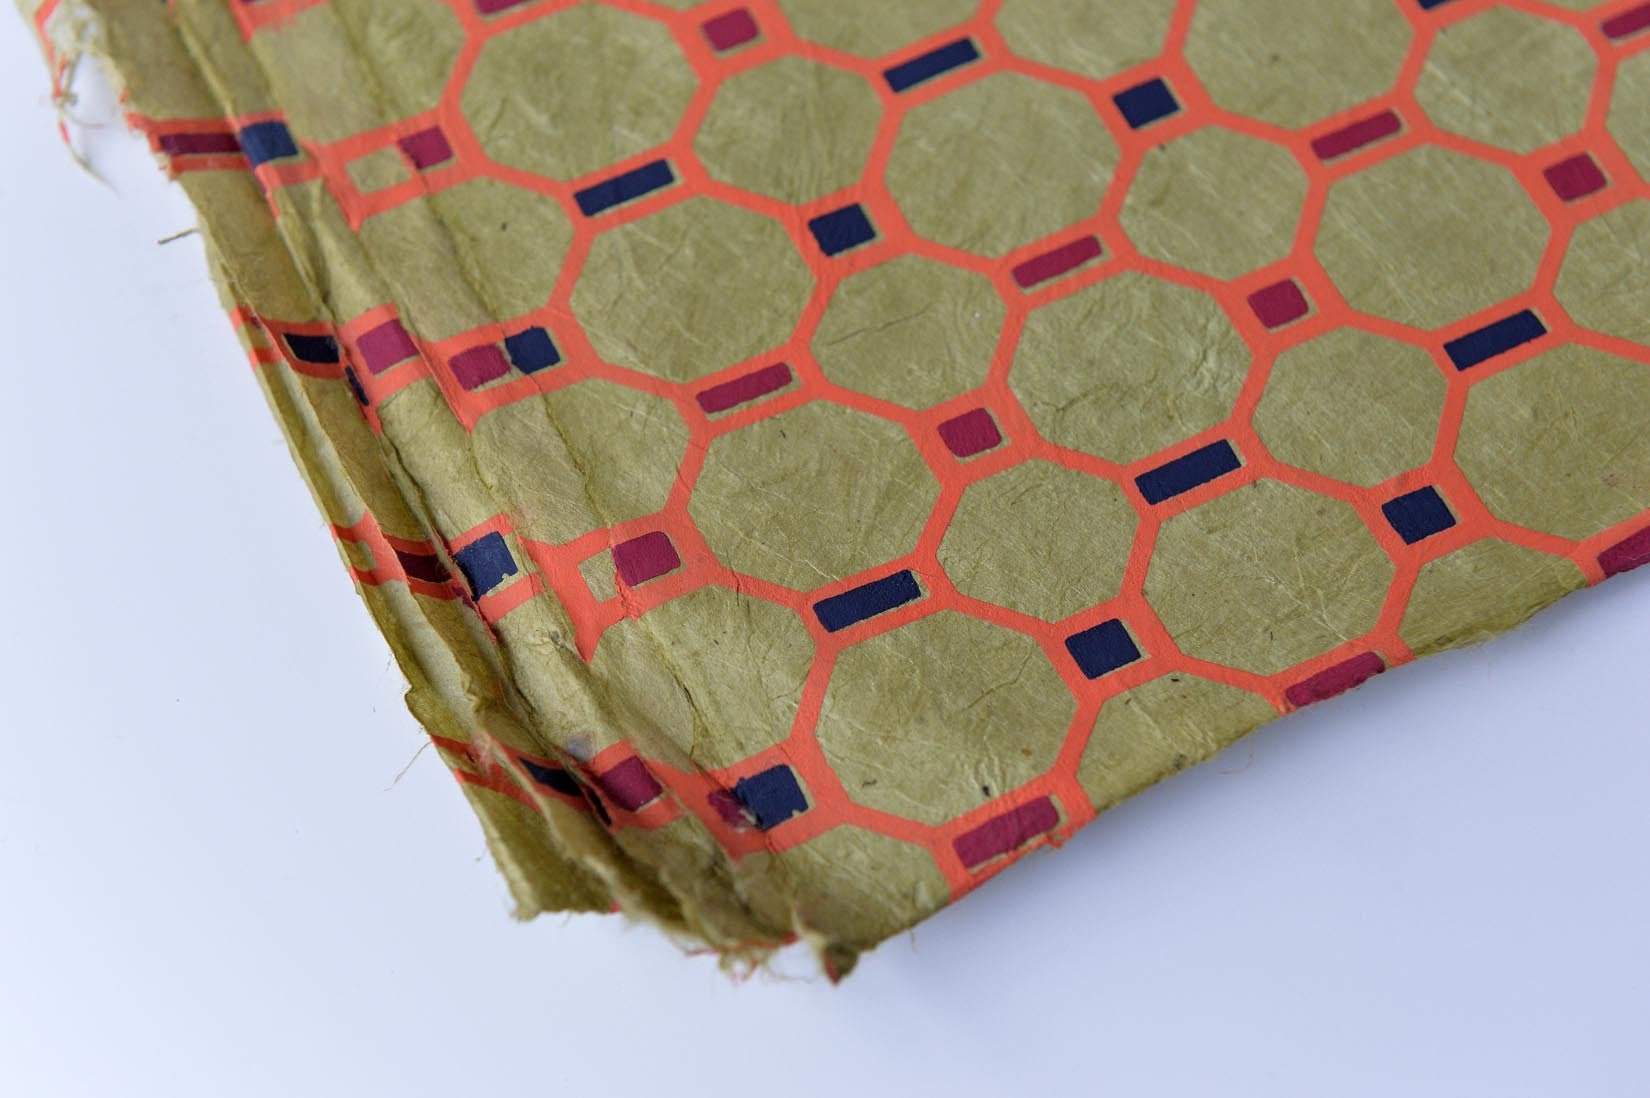 Hexagons-hand made paper - Natalia Willmott